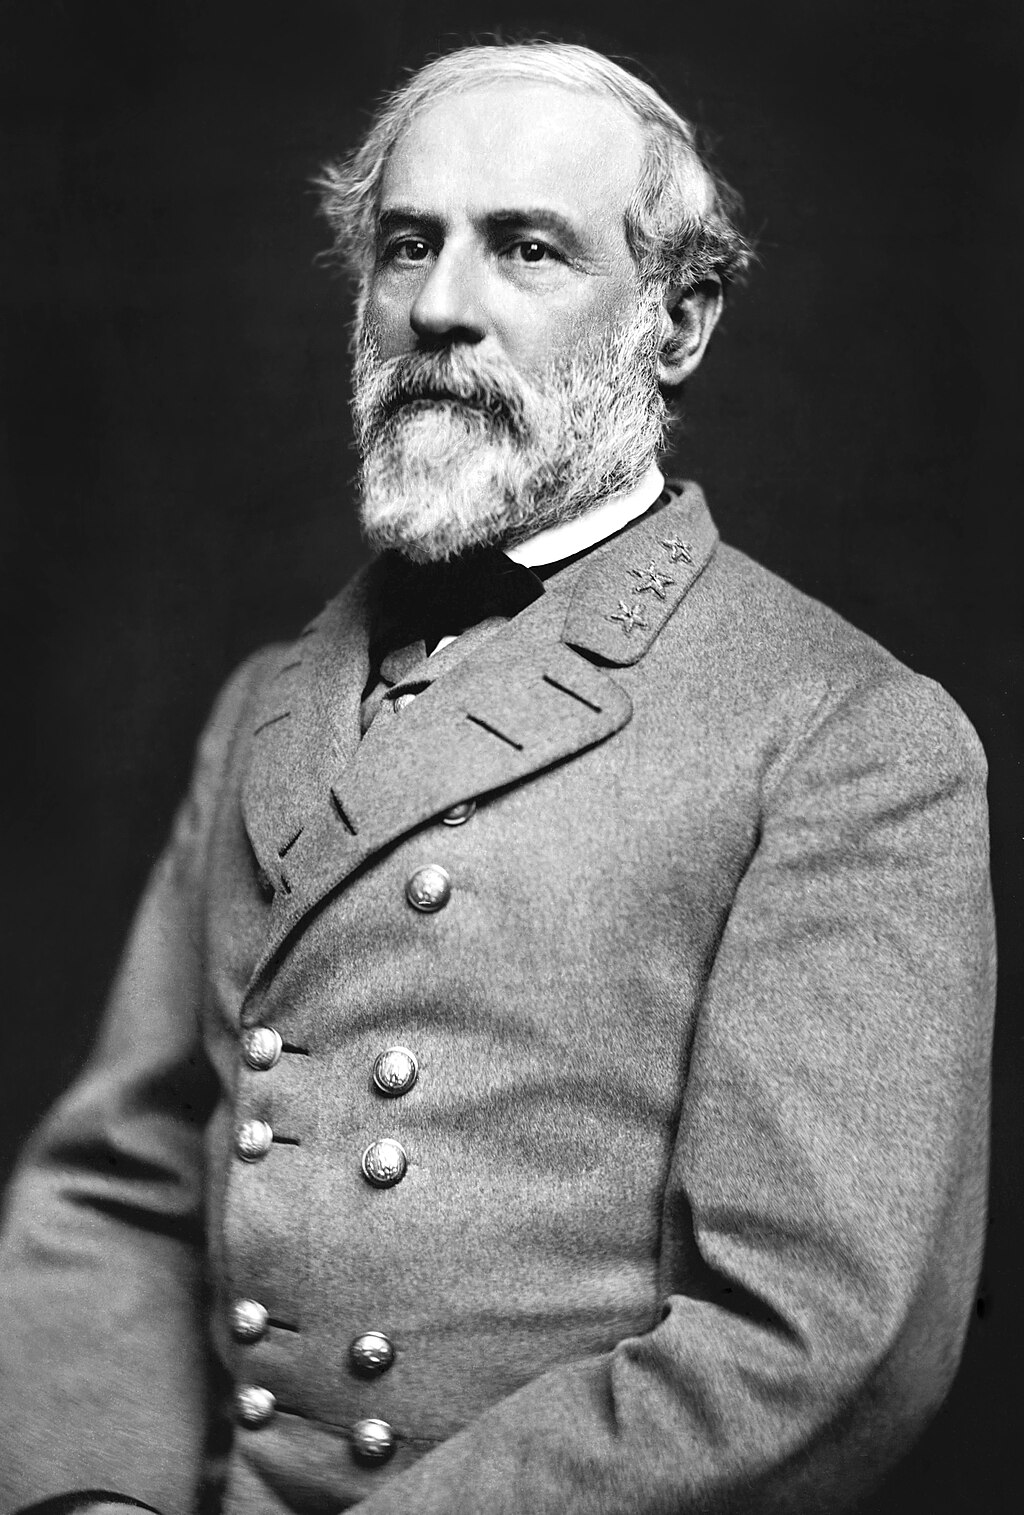 Retrato del general confederado Robert E. Lee. Fotografía tomada por Julian Vannerson en 1864.